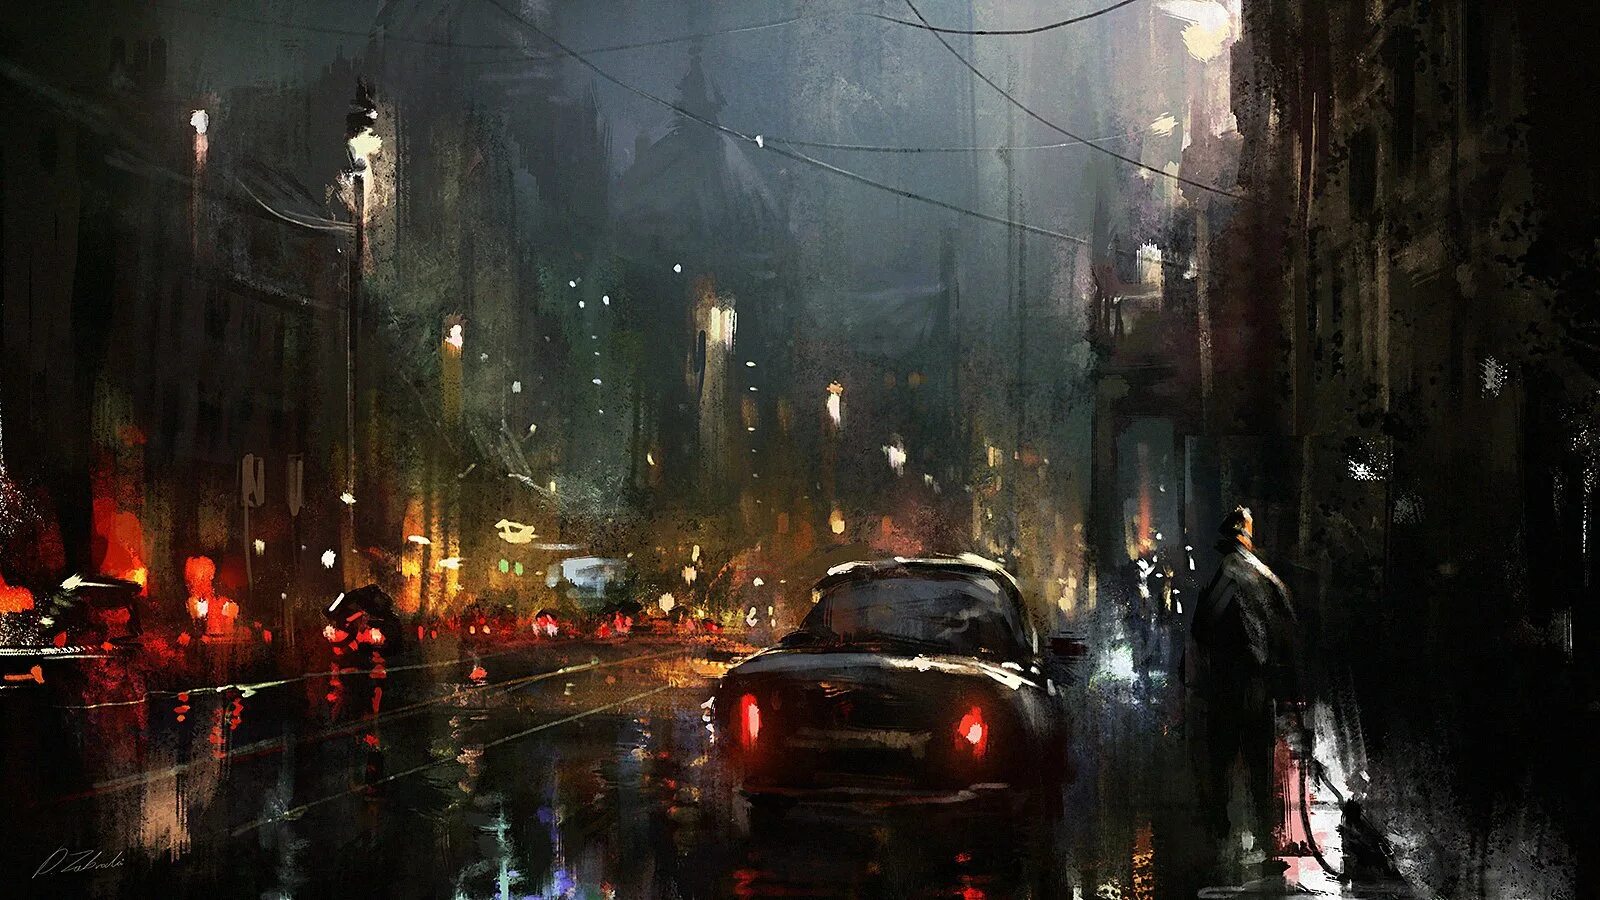 Rain town. Darek Zabrocki художник. Дерек Заброцкий арты. Дождливый город. Мрачный городской пейзаж.